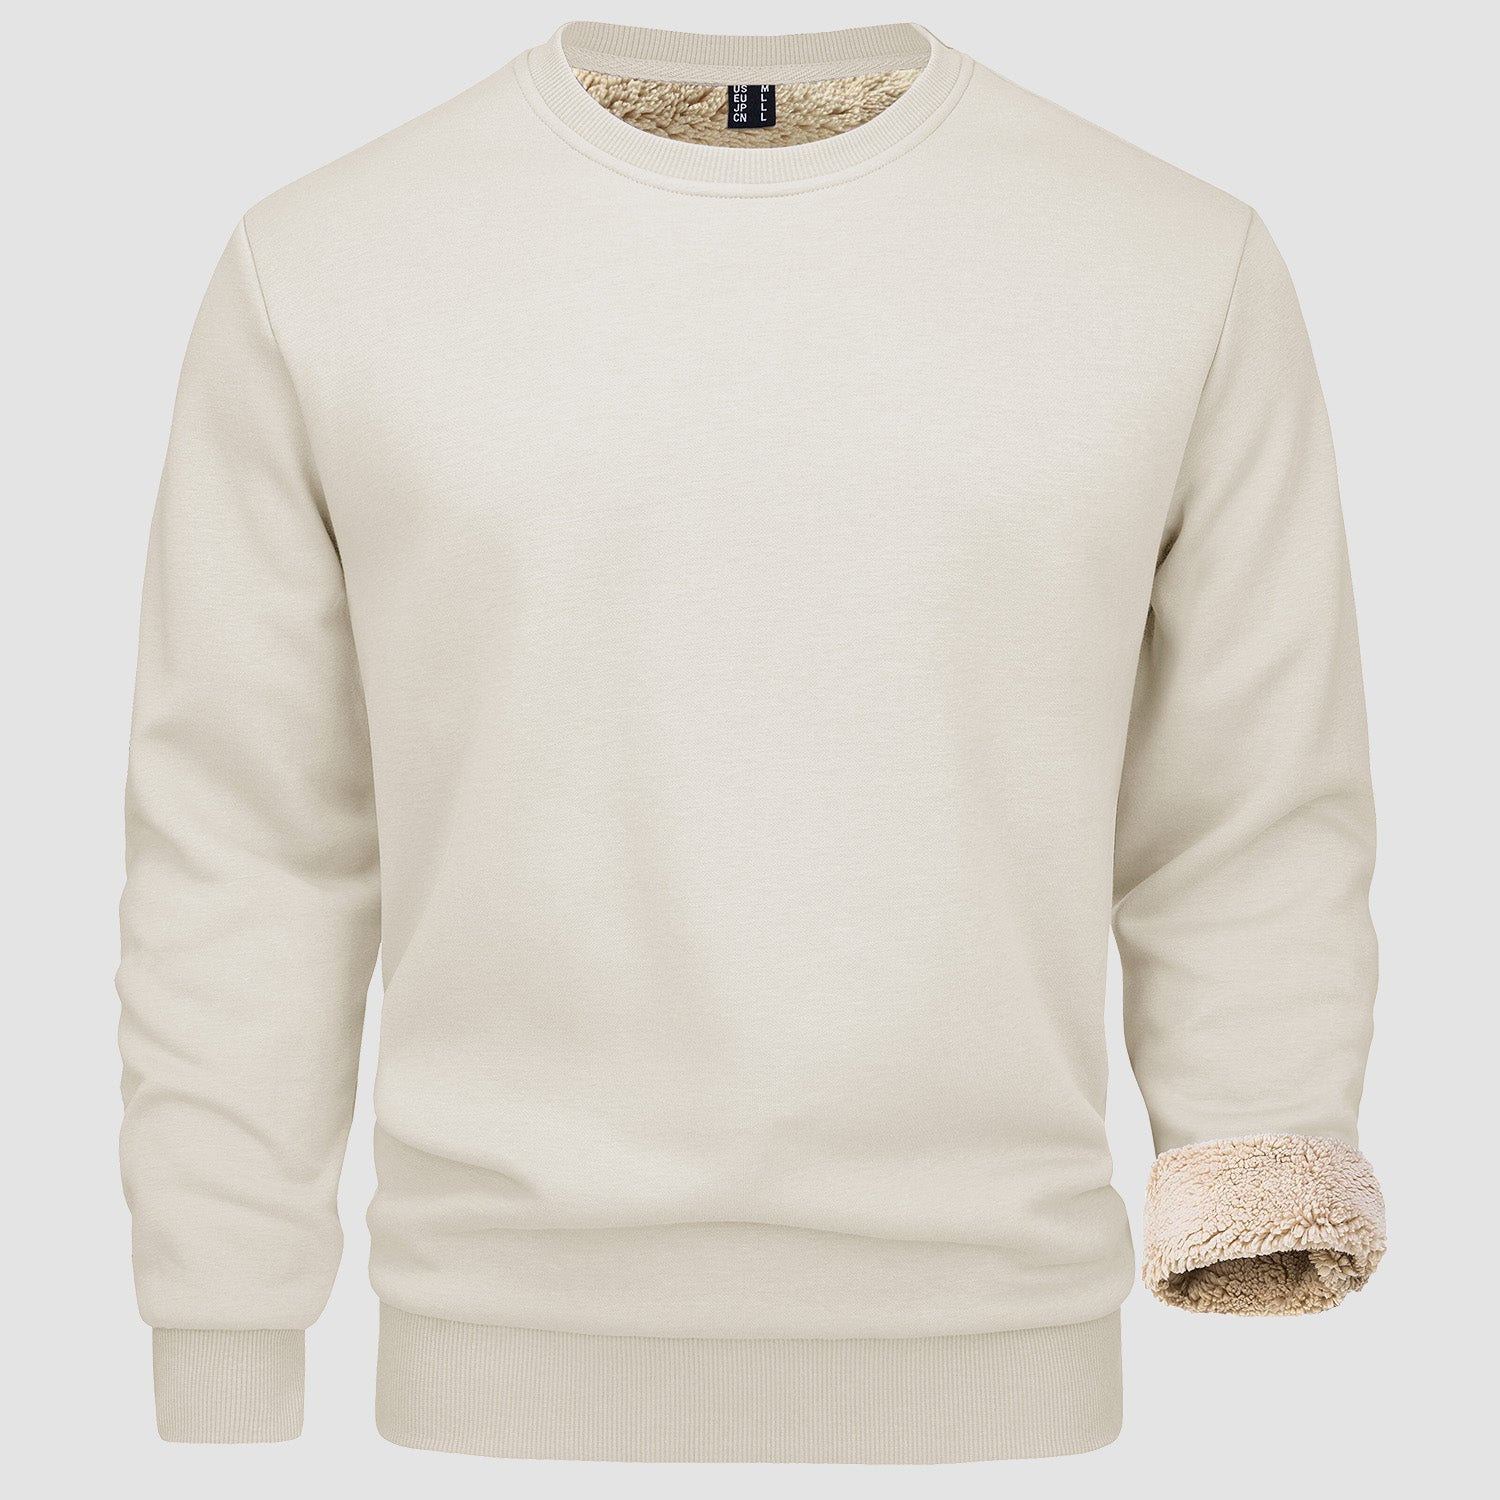 Men's  Basic Pullover Crewneck Sweater Fleece Lined Sweatshirt